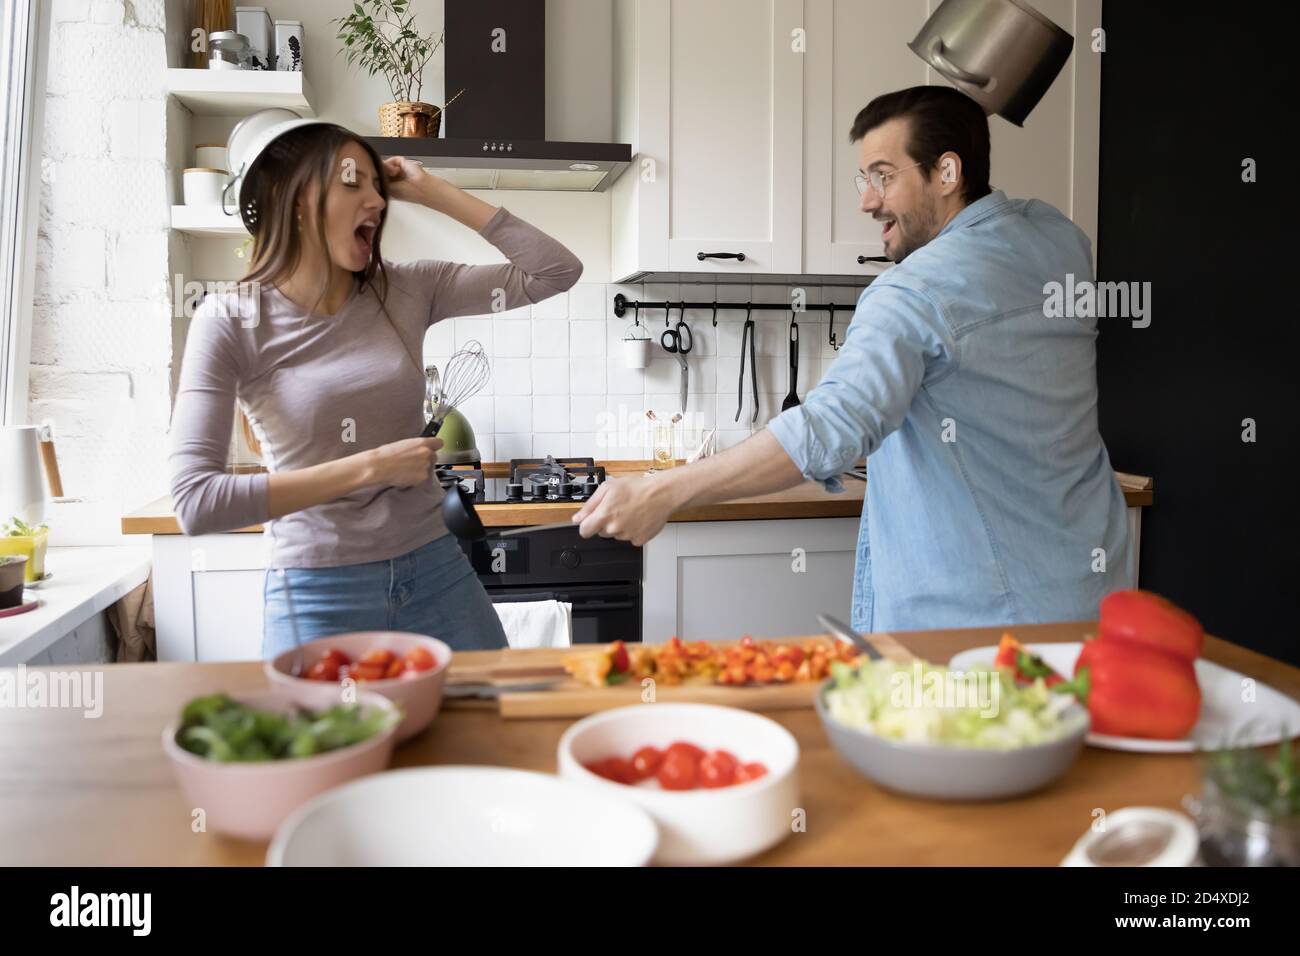 Überglücklich positives junges europäisches Familienpaar, das Spaß an der Küche hat. Stockfoto